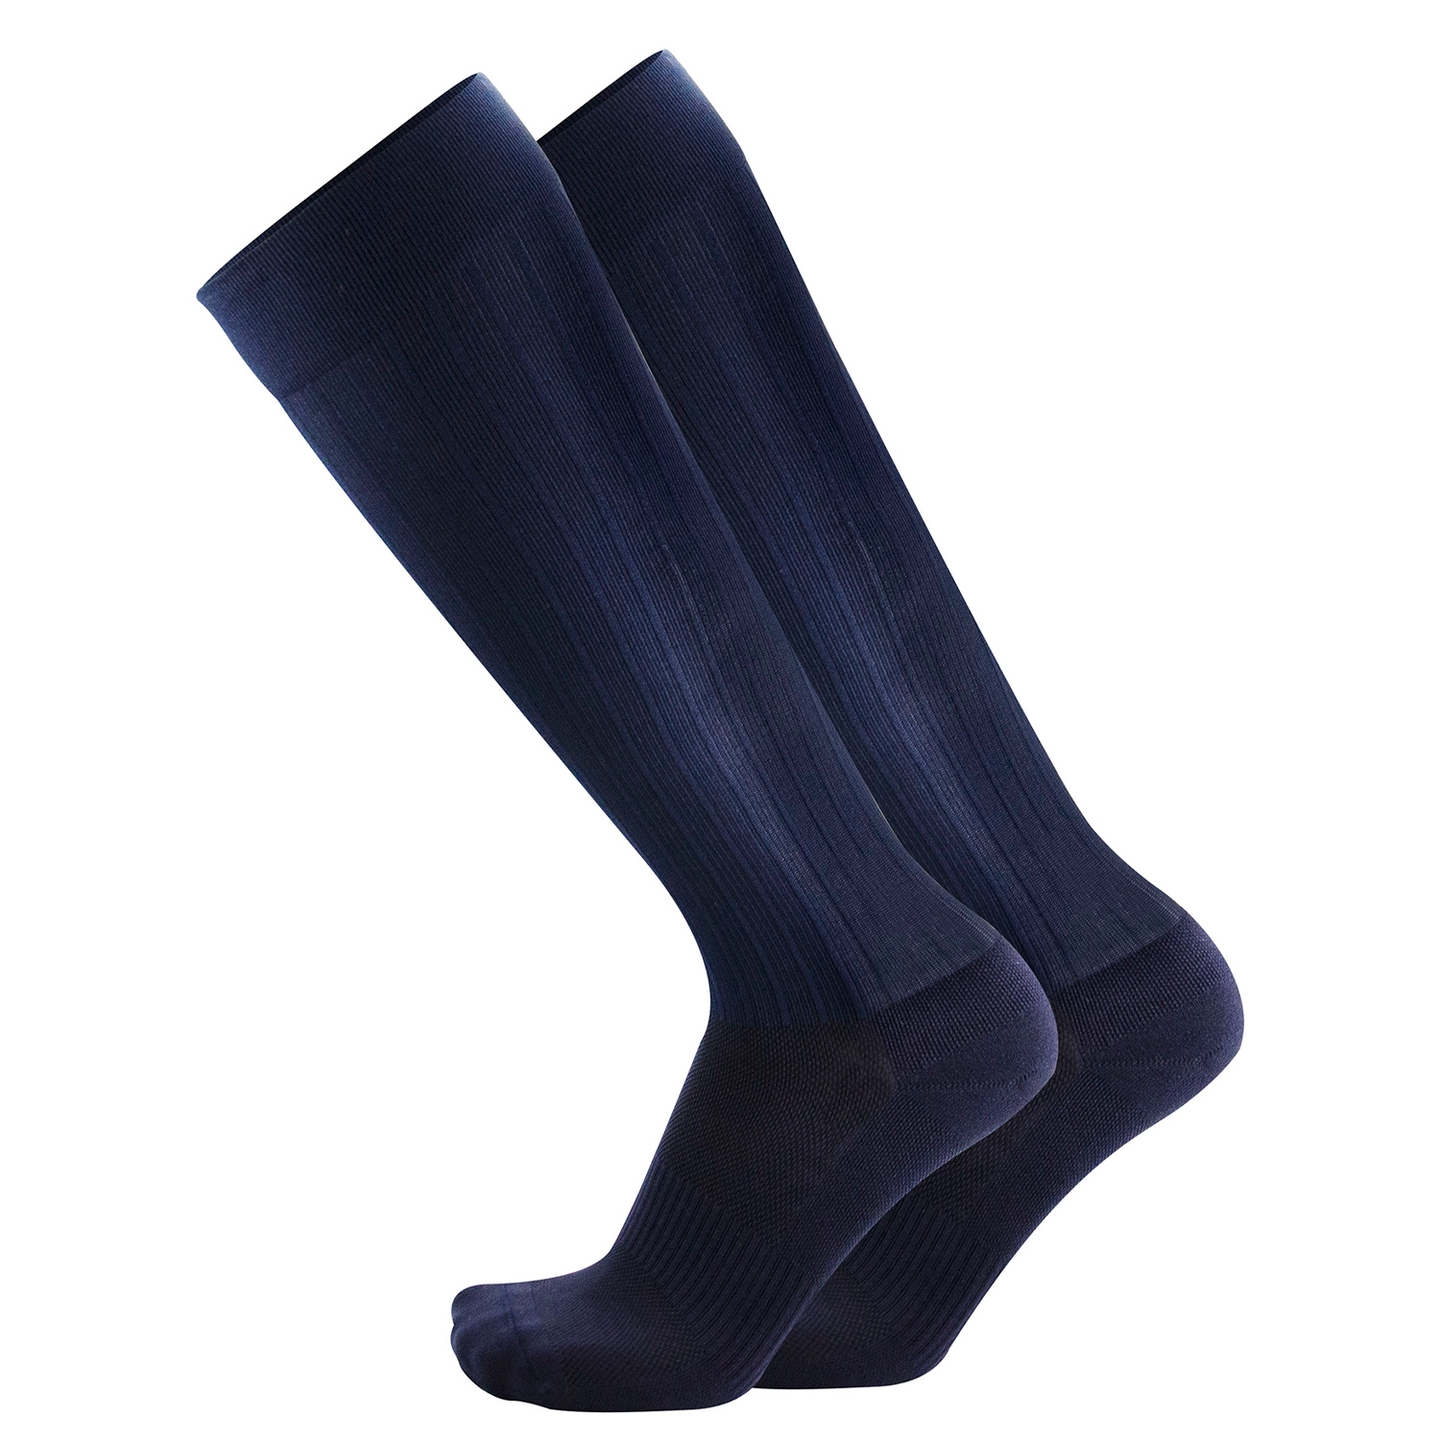 I am amazing, grey compression socks 15-20 mmHg